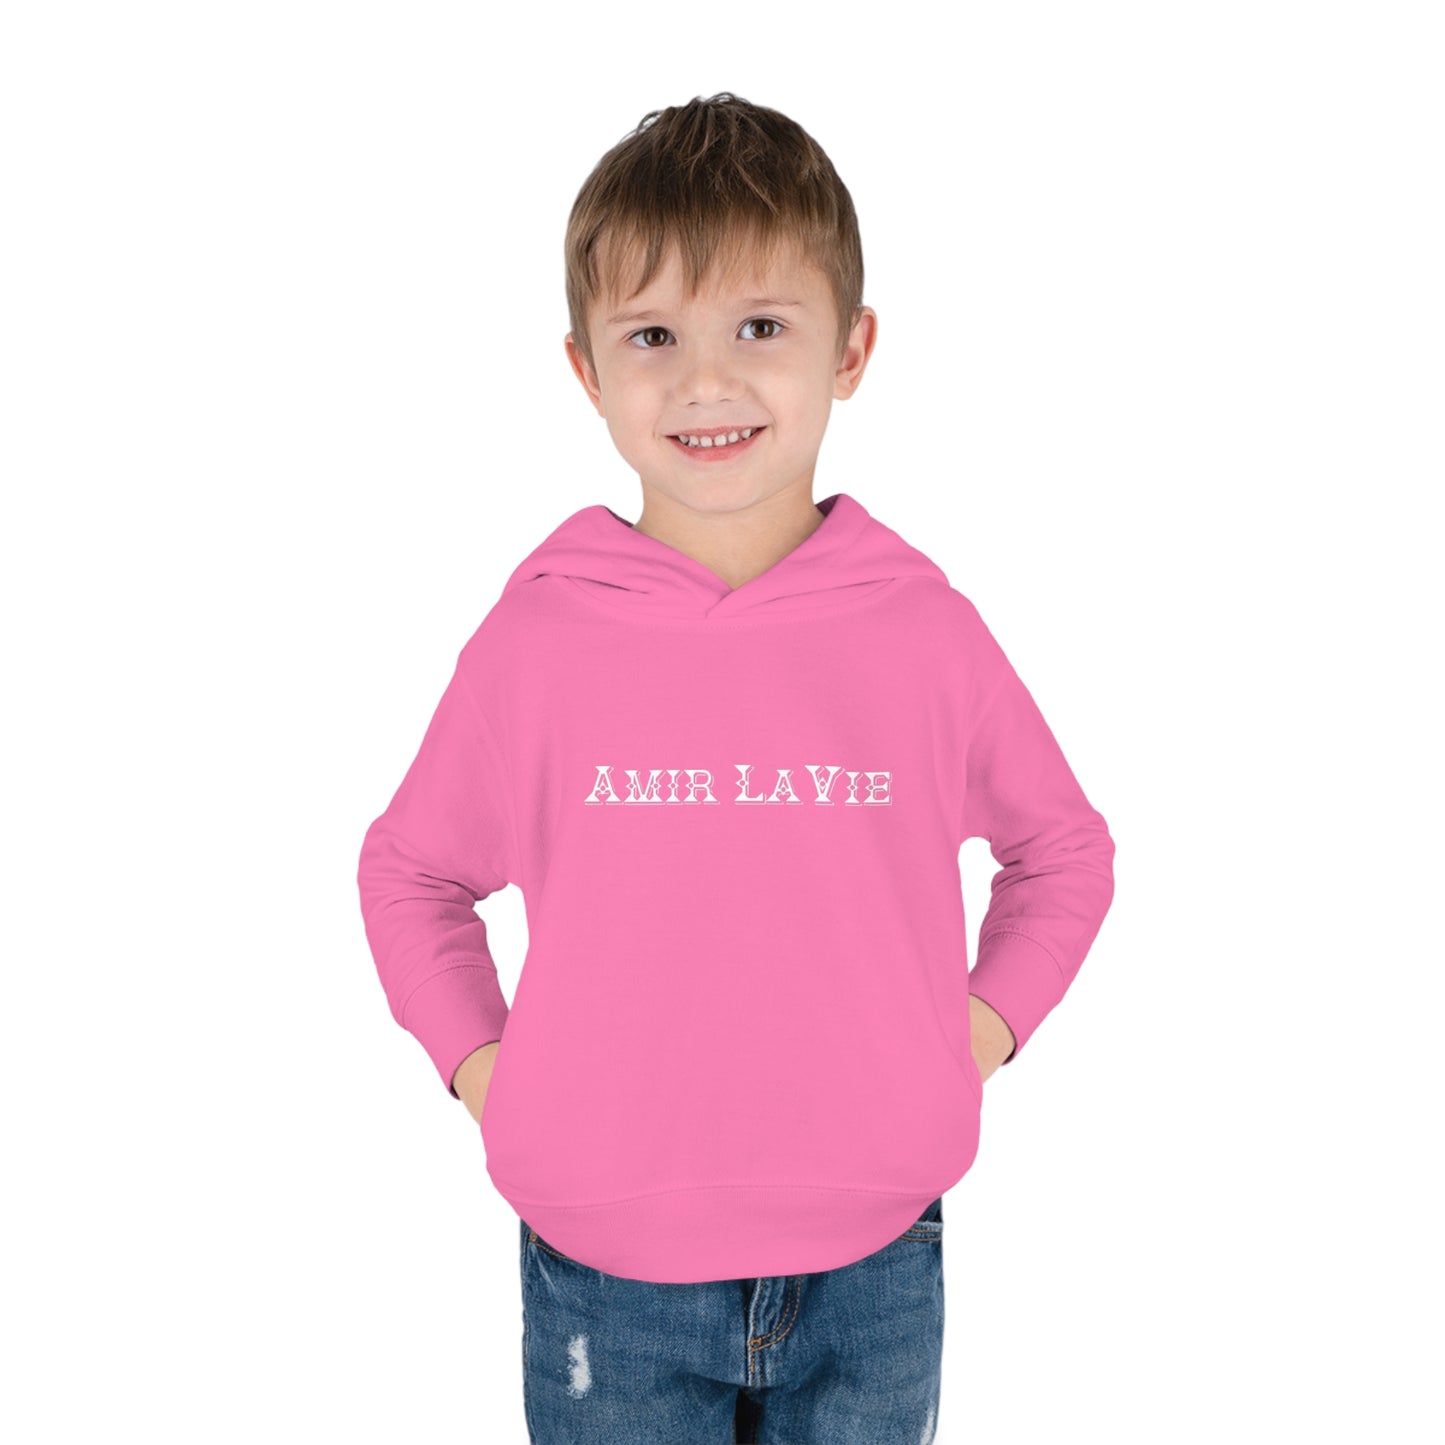 Amir LaVie - Toddler Hoodie